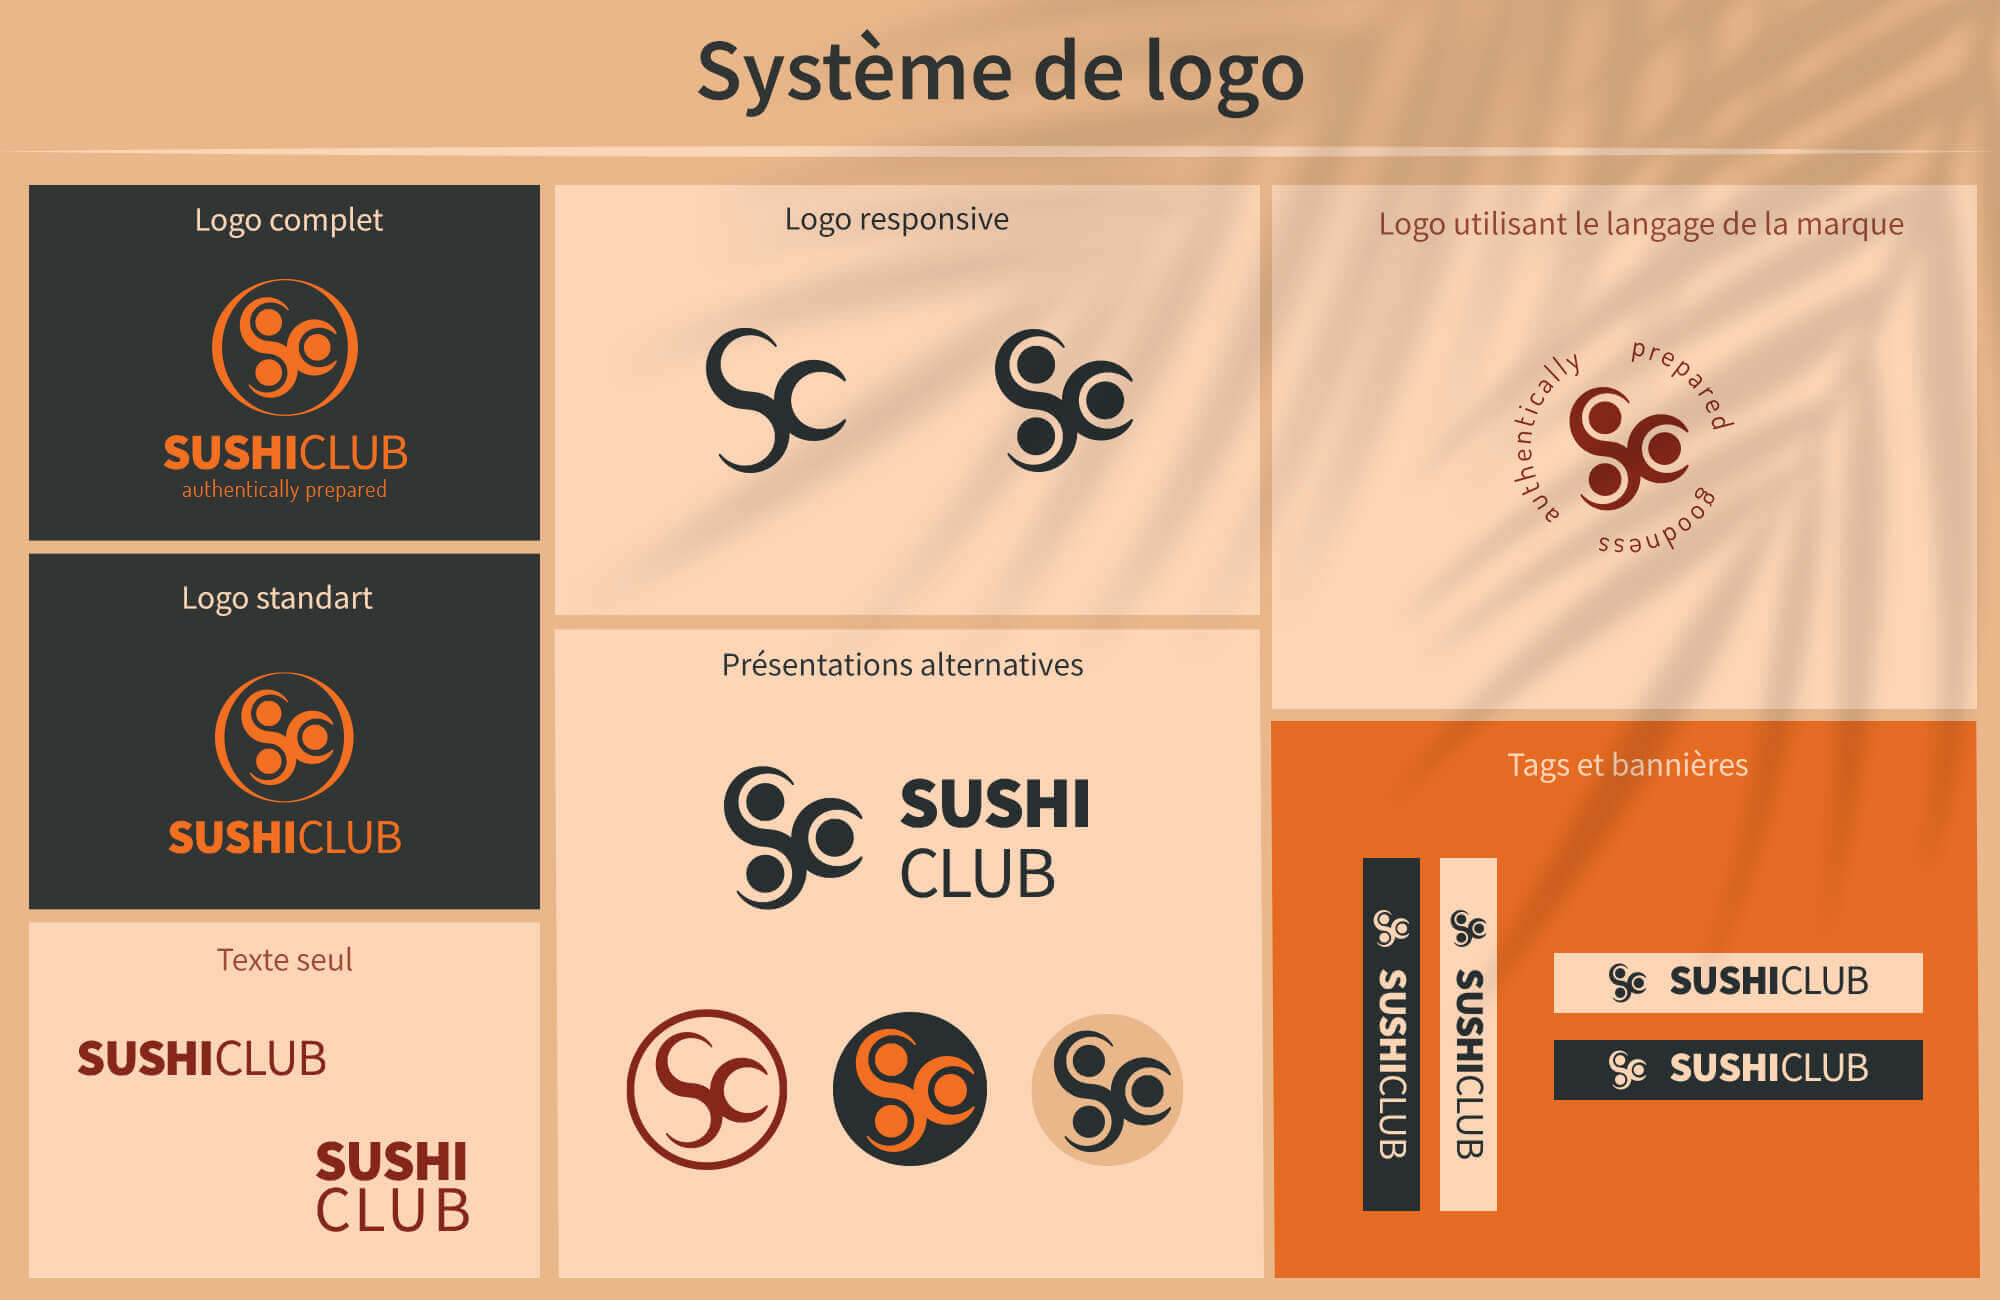 système de logo responsif et bannières